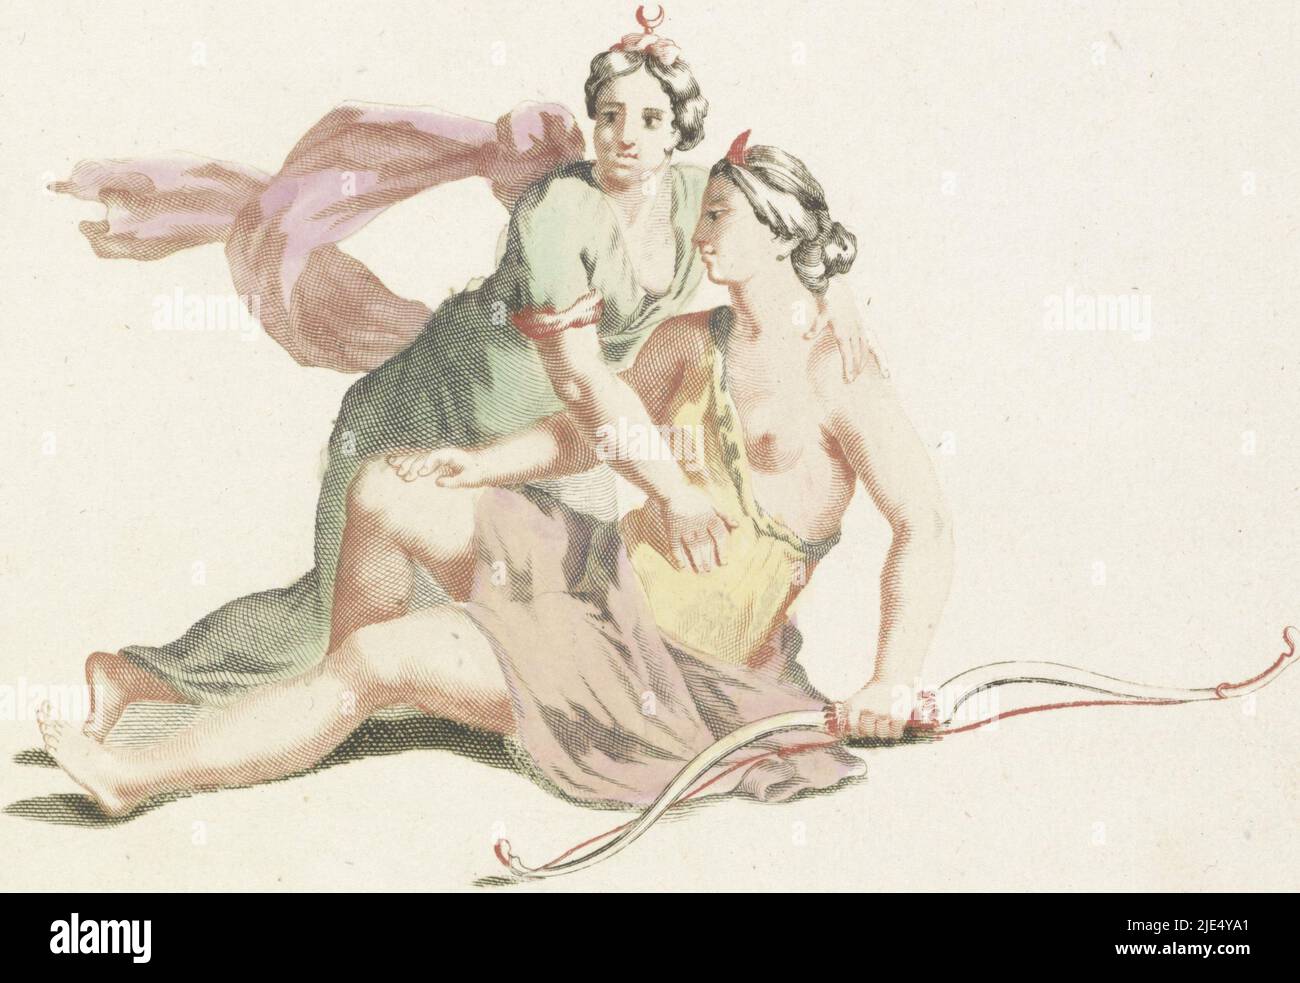 Jupiter, sous l'apparence de la déesse de la lune Diana, embrasse Callisto. Elle tient un arc dans sa main, Jupiter et Callisto., imprimeur: Anonyme, Johan Teyler, pays-Bas, 1688 - 1698, papier, gravure, h 196 mm, l 233 mm Banque D'Images